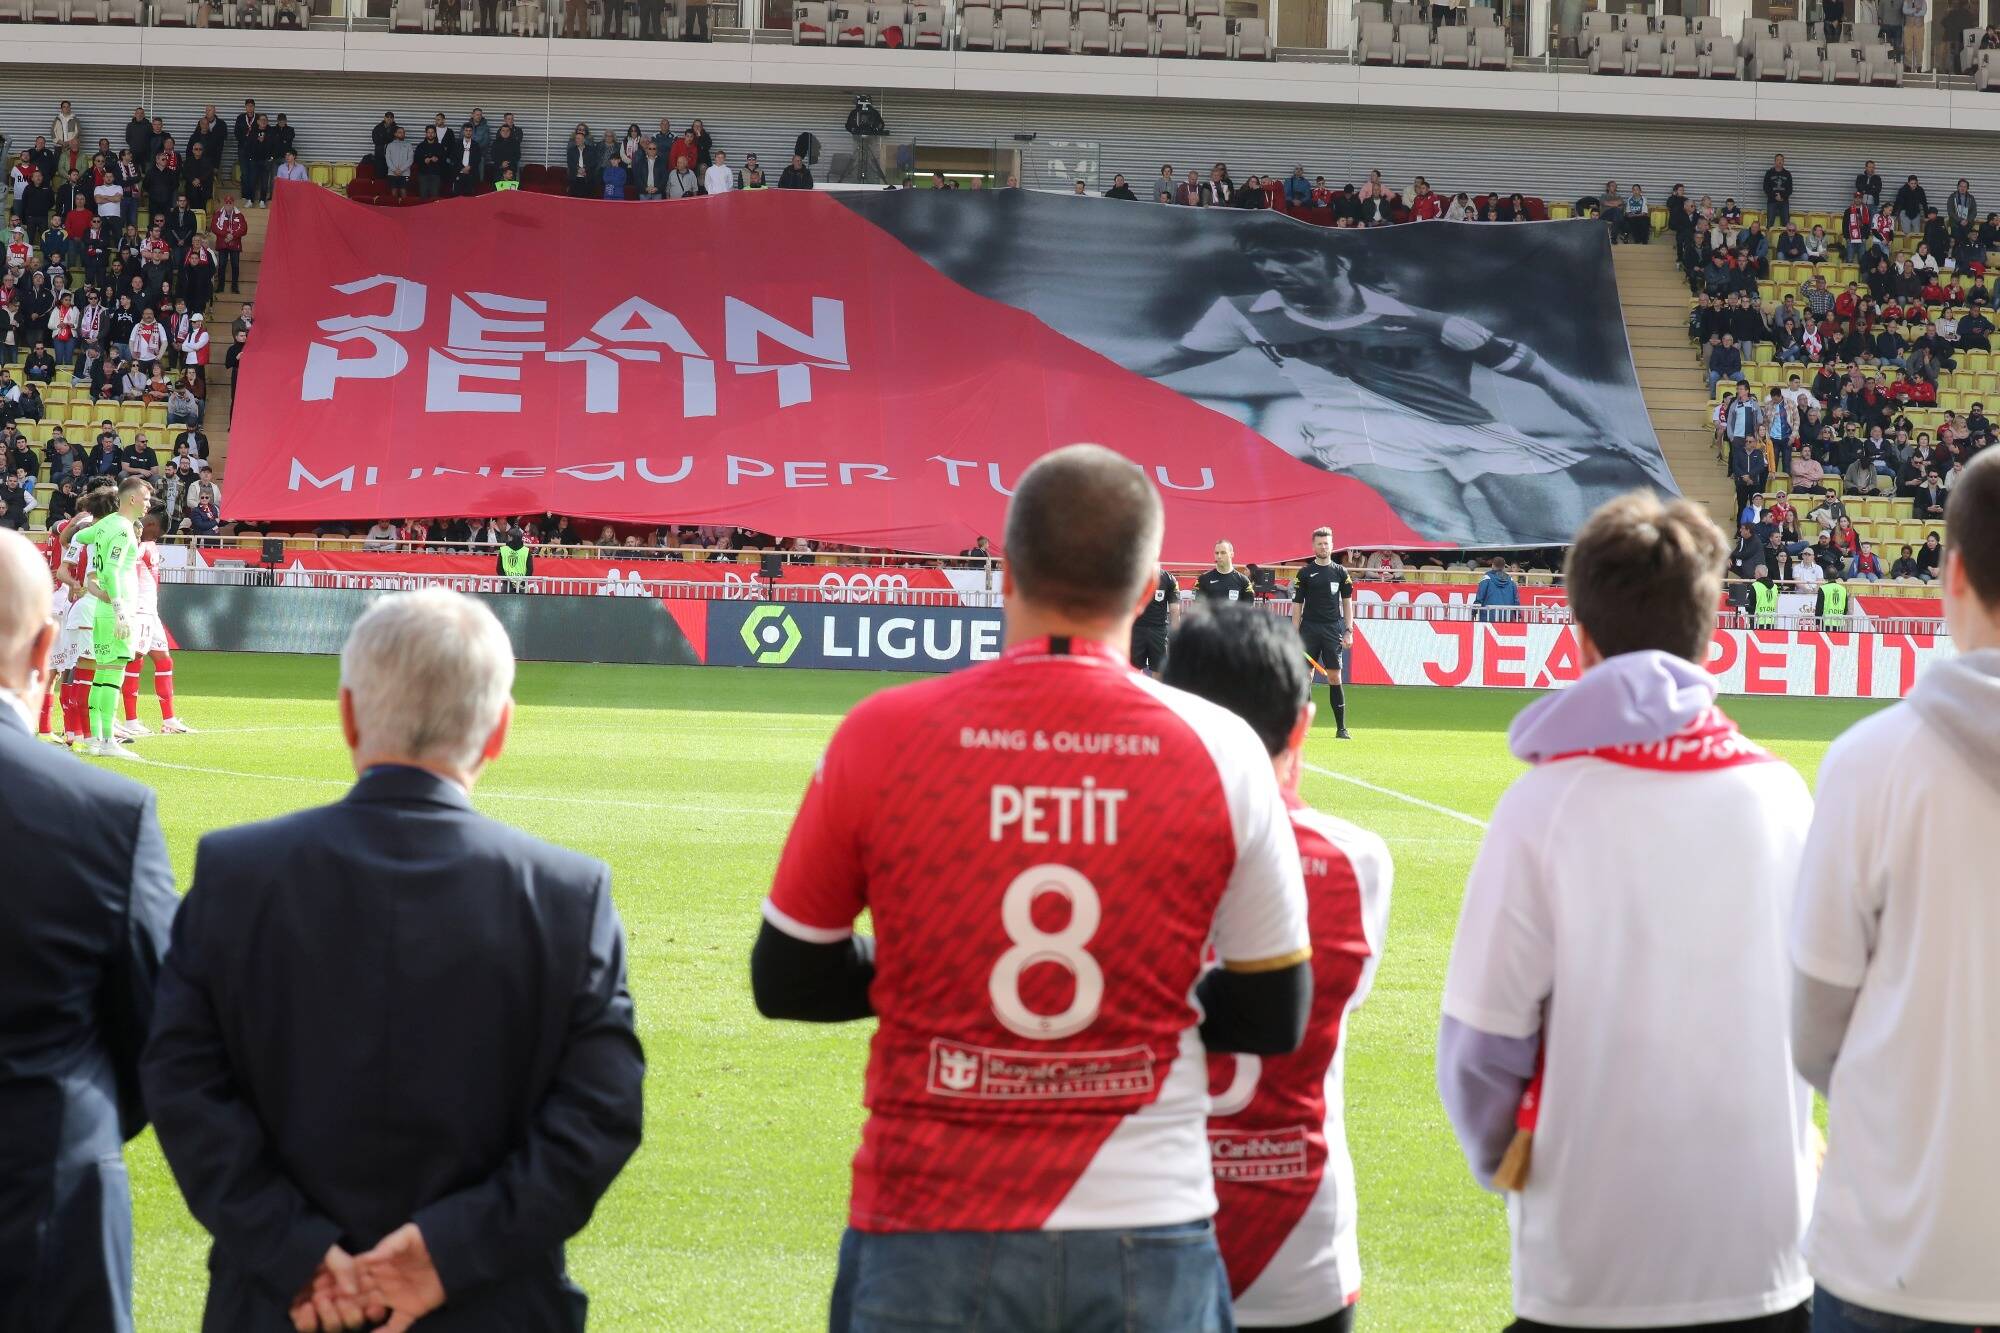 SONDAGE. Souhaiteriez-vous qu'un hommage perpétuel soit rendu à Jean Petit, légende de l'AS Monaco ?